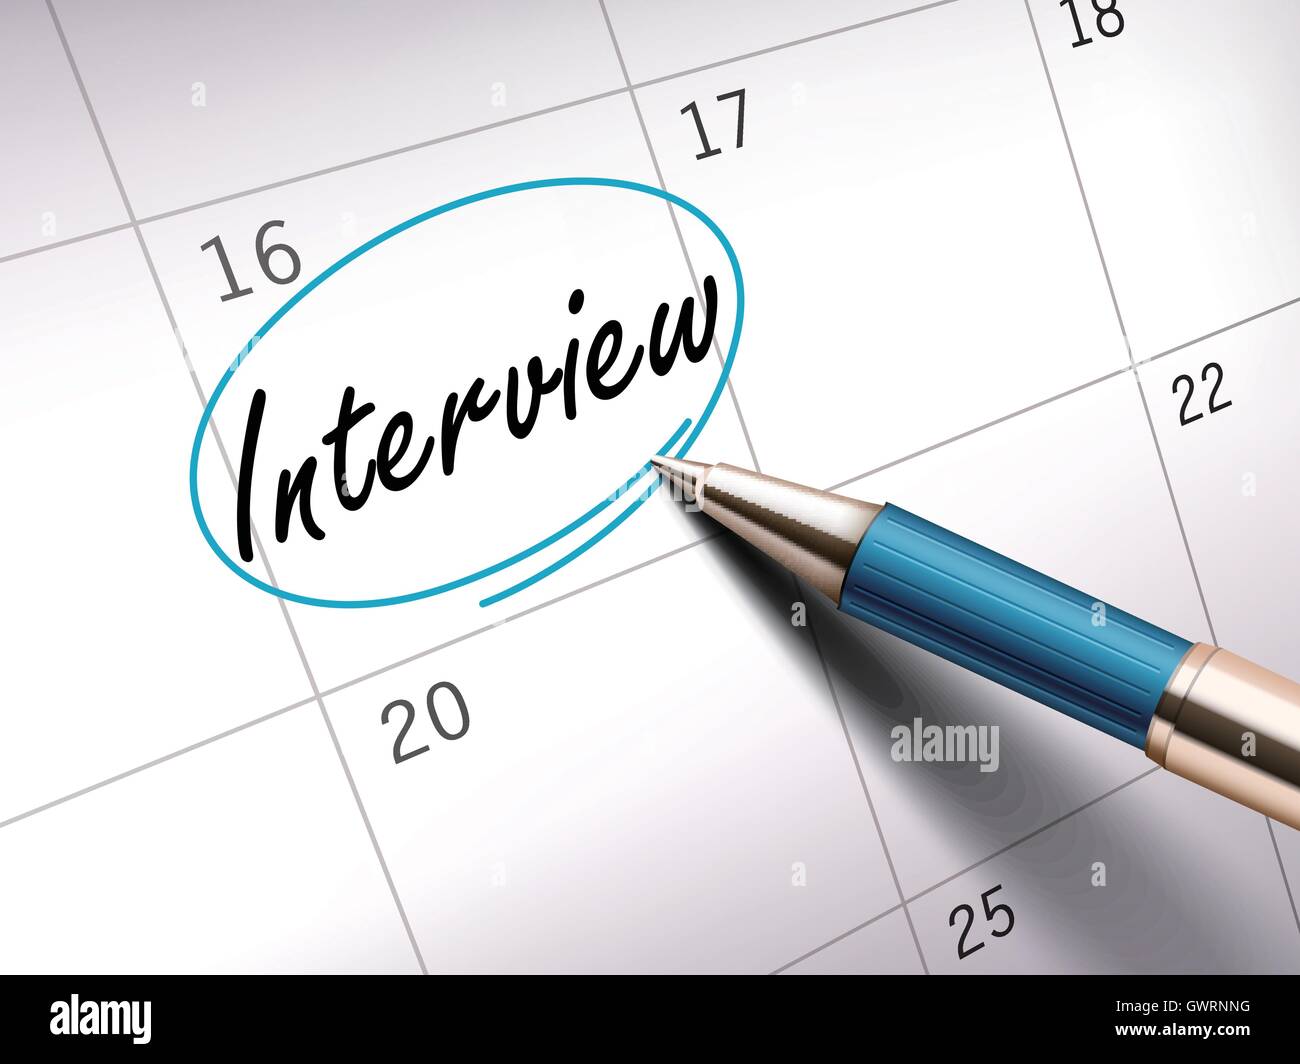 Interview Wort Kreis auf einen Kalender von einem blauen Kugelschreiber markiert. 3D illustration Stock Vektor